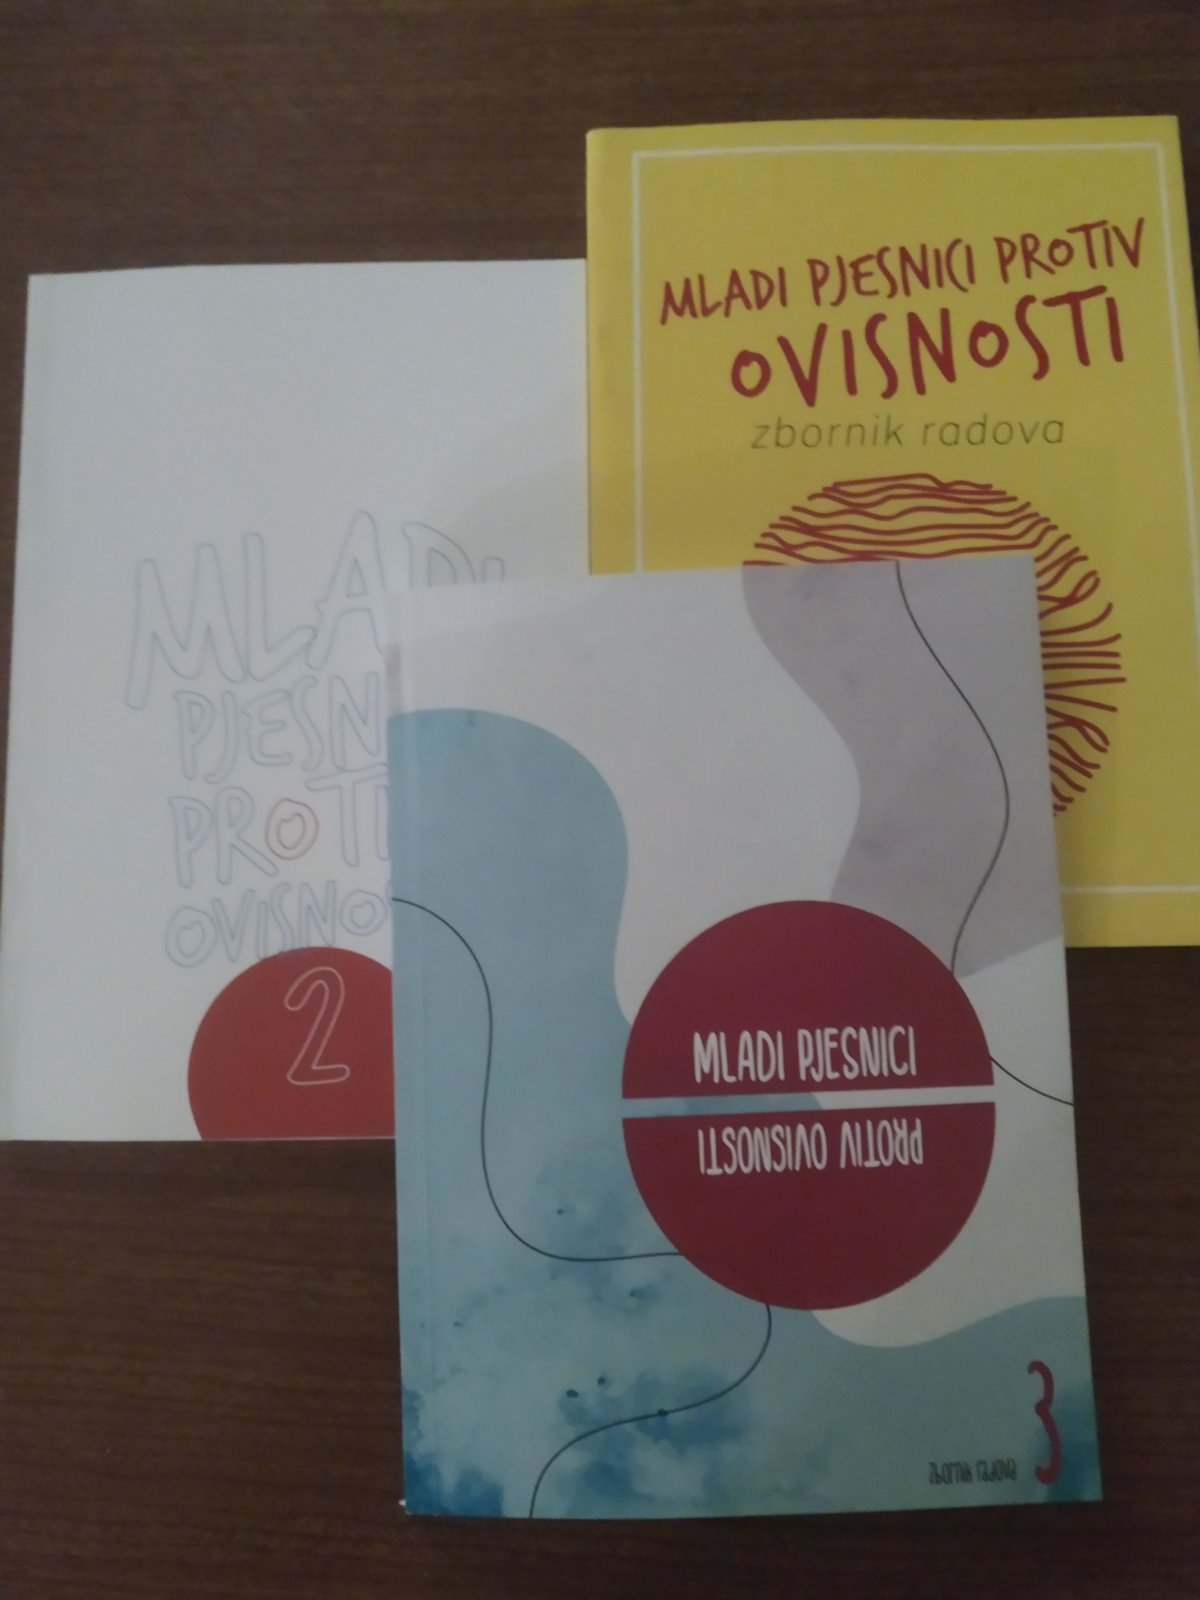 Mini festival 'Mladi pjesnici protiv ovisnosti' u Centru za kulturu Mostar